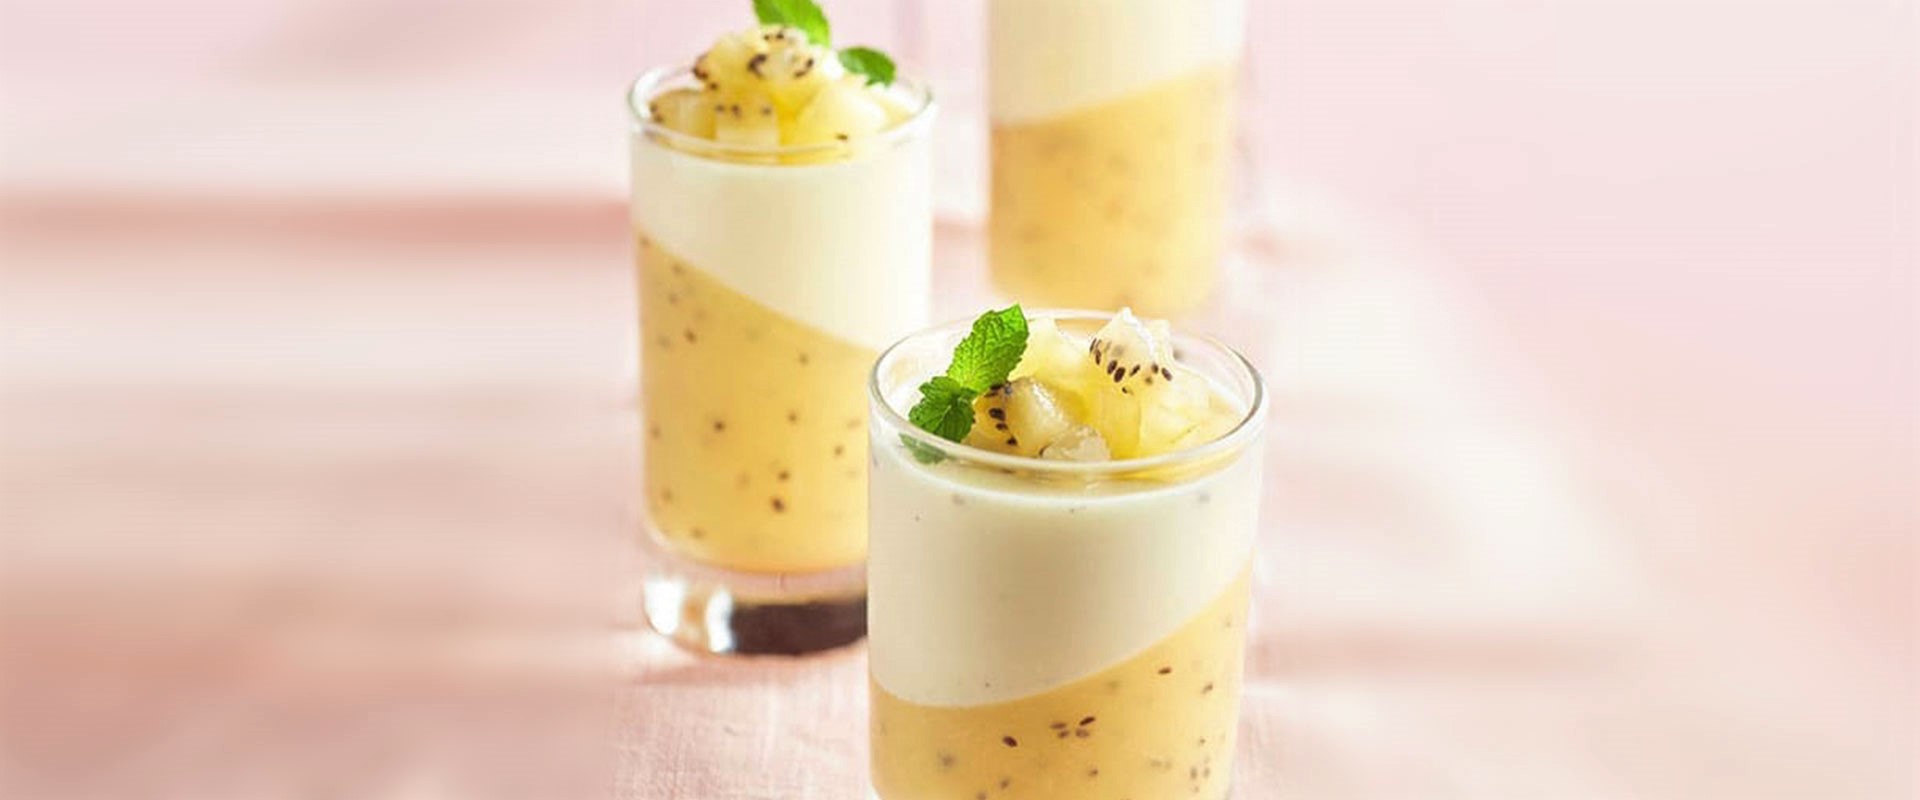 recipe9-Sungold-kiwi-En-pannA-cotta-met-vanille-thumbnail